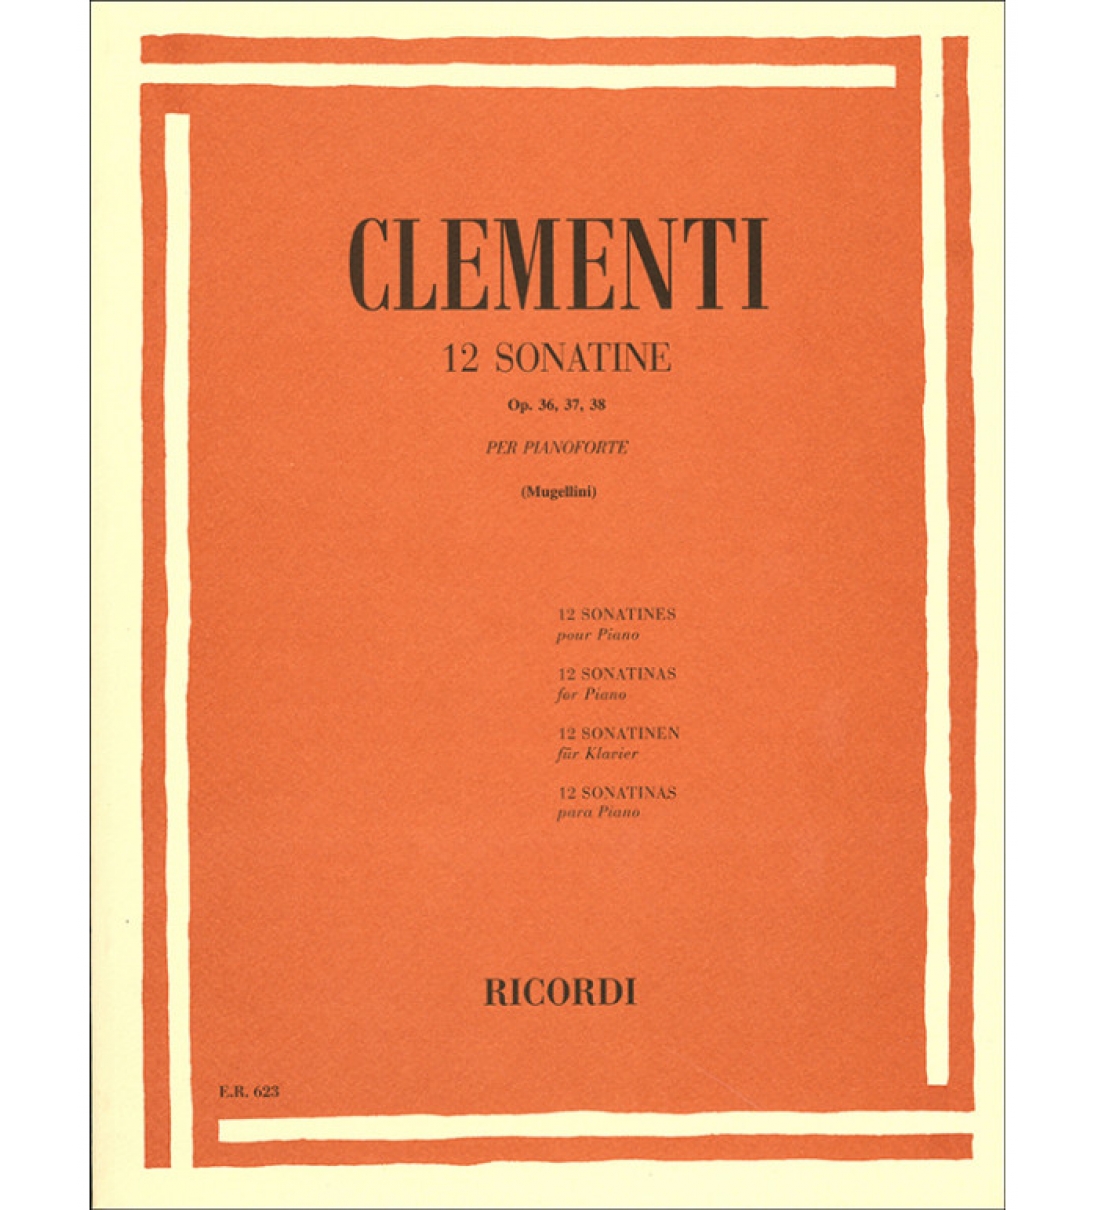 12 Sonatine Opus 36_37_38 per Pianoforte - Clementi